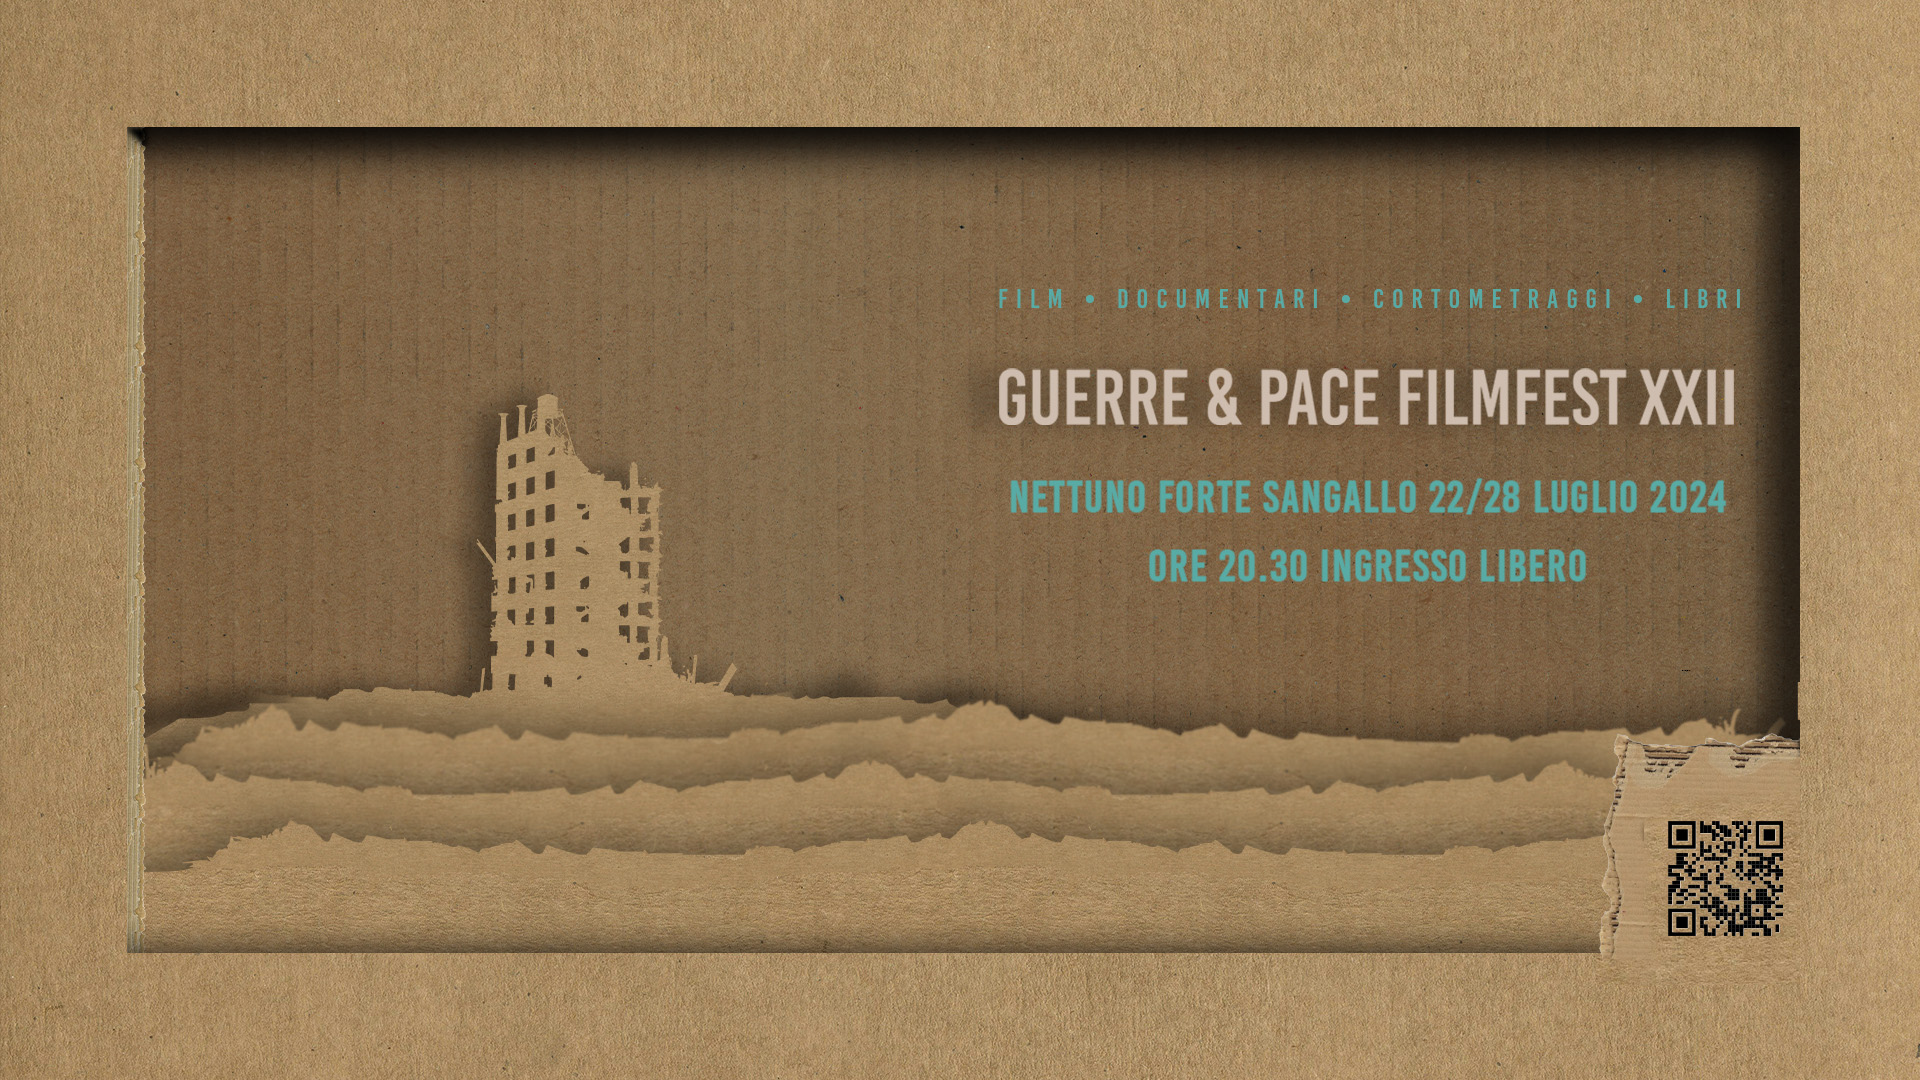 Guerre&Pace Film Fest: Film, Docu, Corti e Libri sulle guerre in medio - a Nettuno dal 22 al 28 luglio - XII edizione